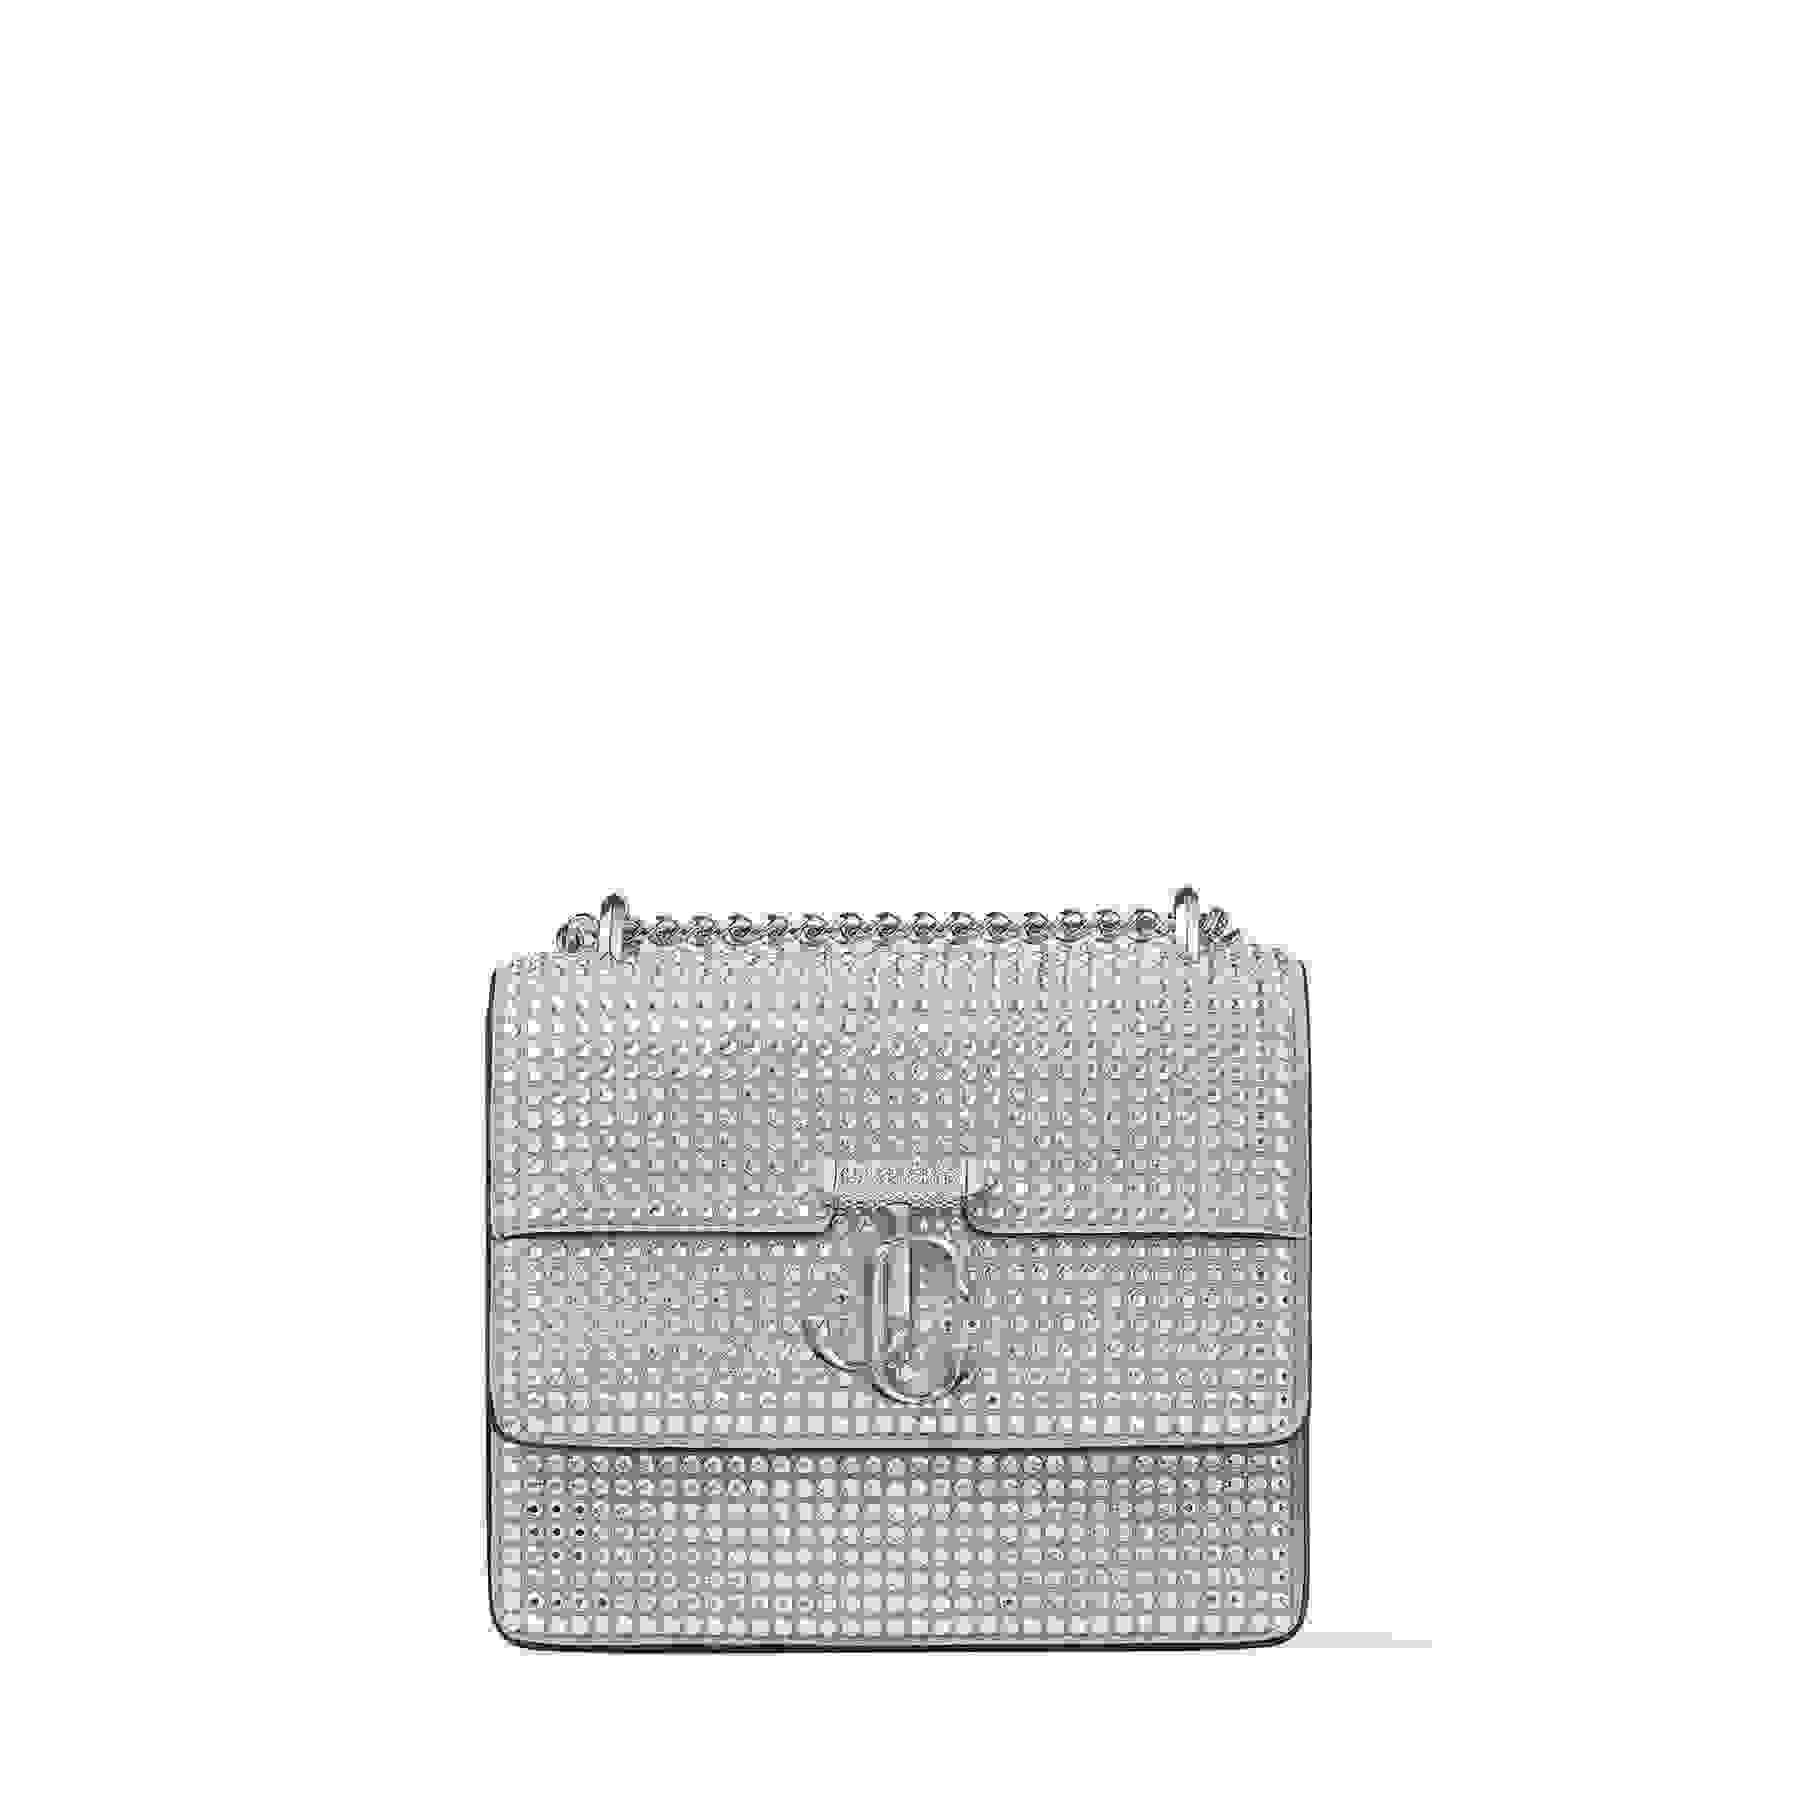 Silver Suede Shoulder Bag with Crystal Embellishment | VARENNE SHOULDER ...